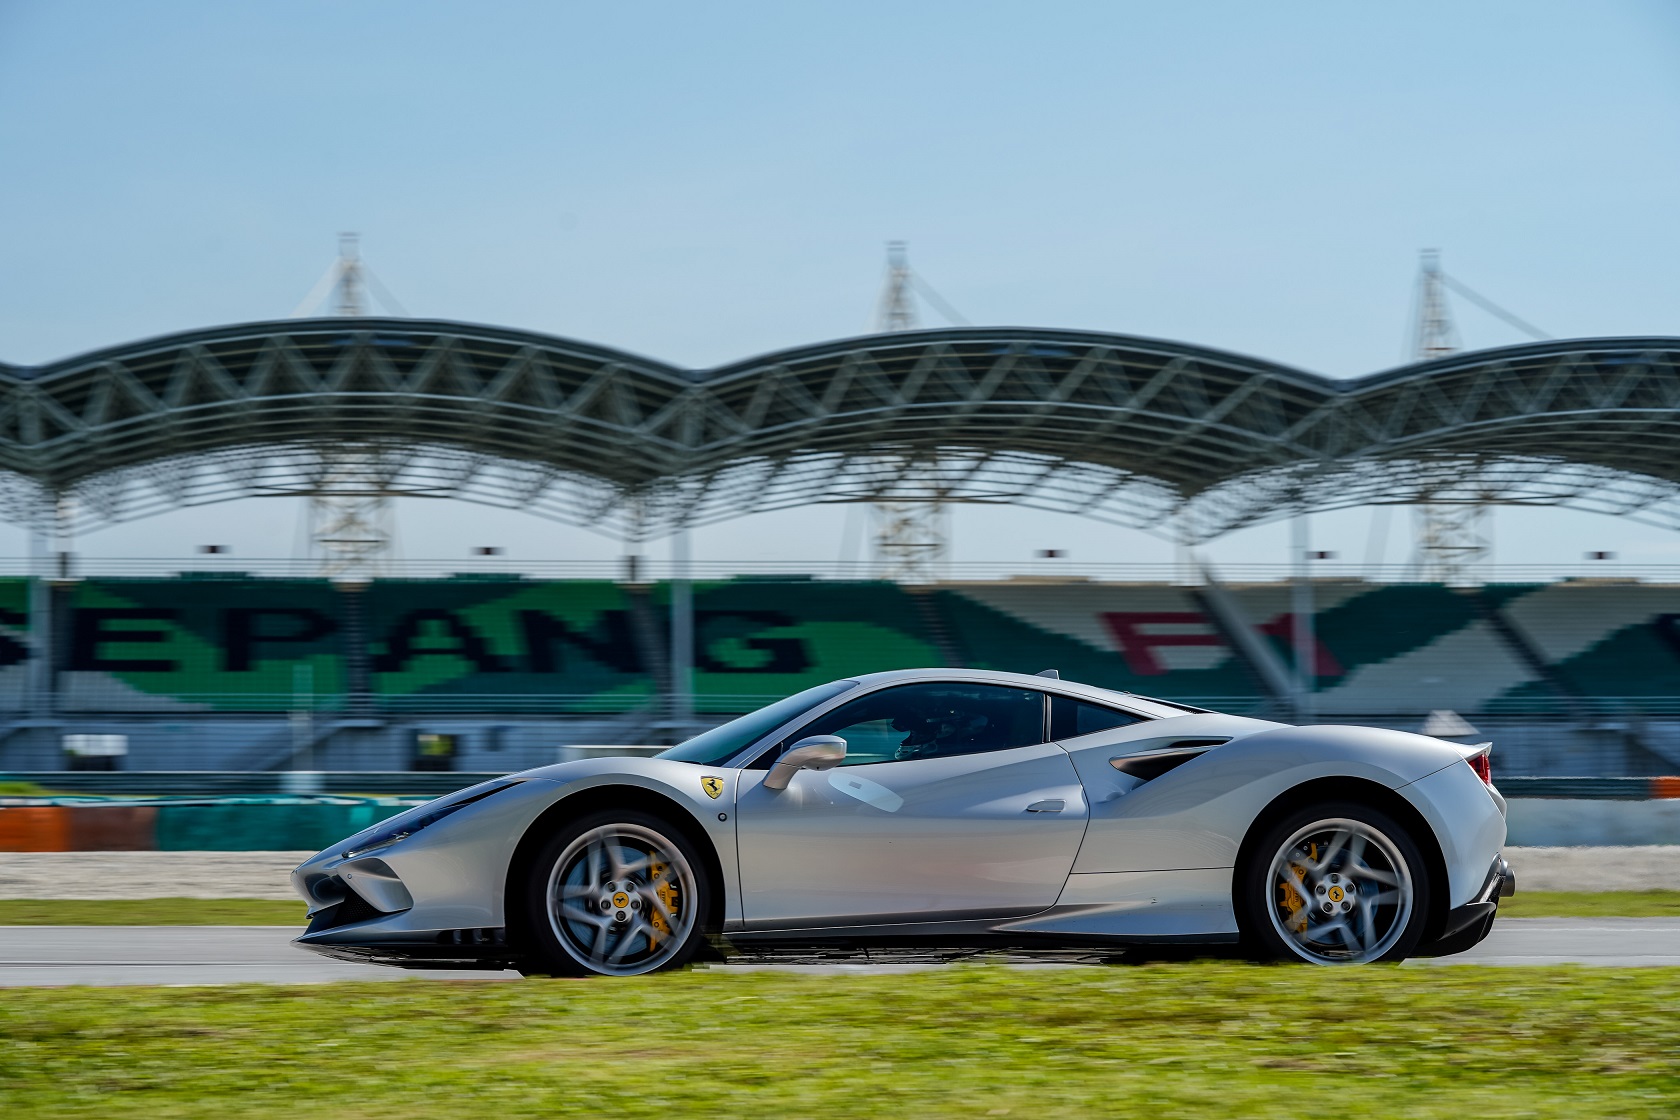 What cars does Ferrari build?